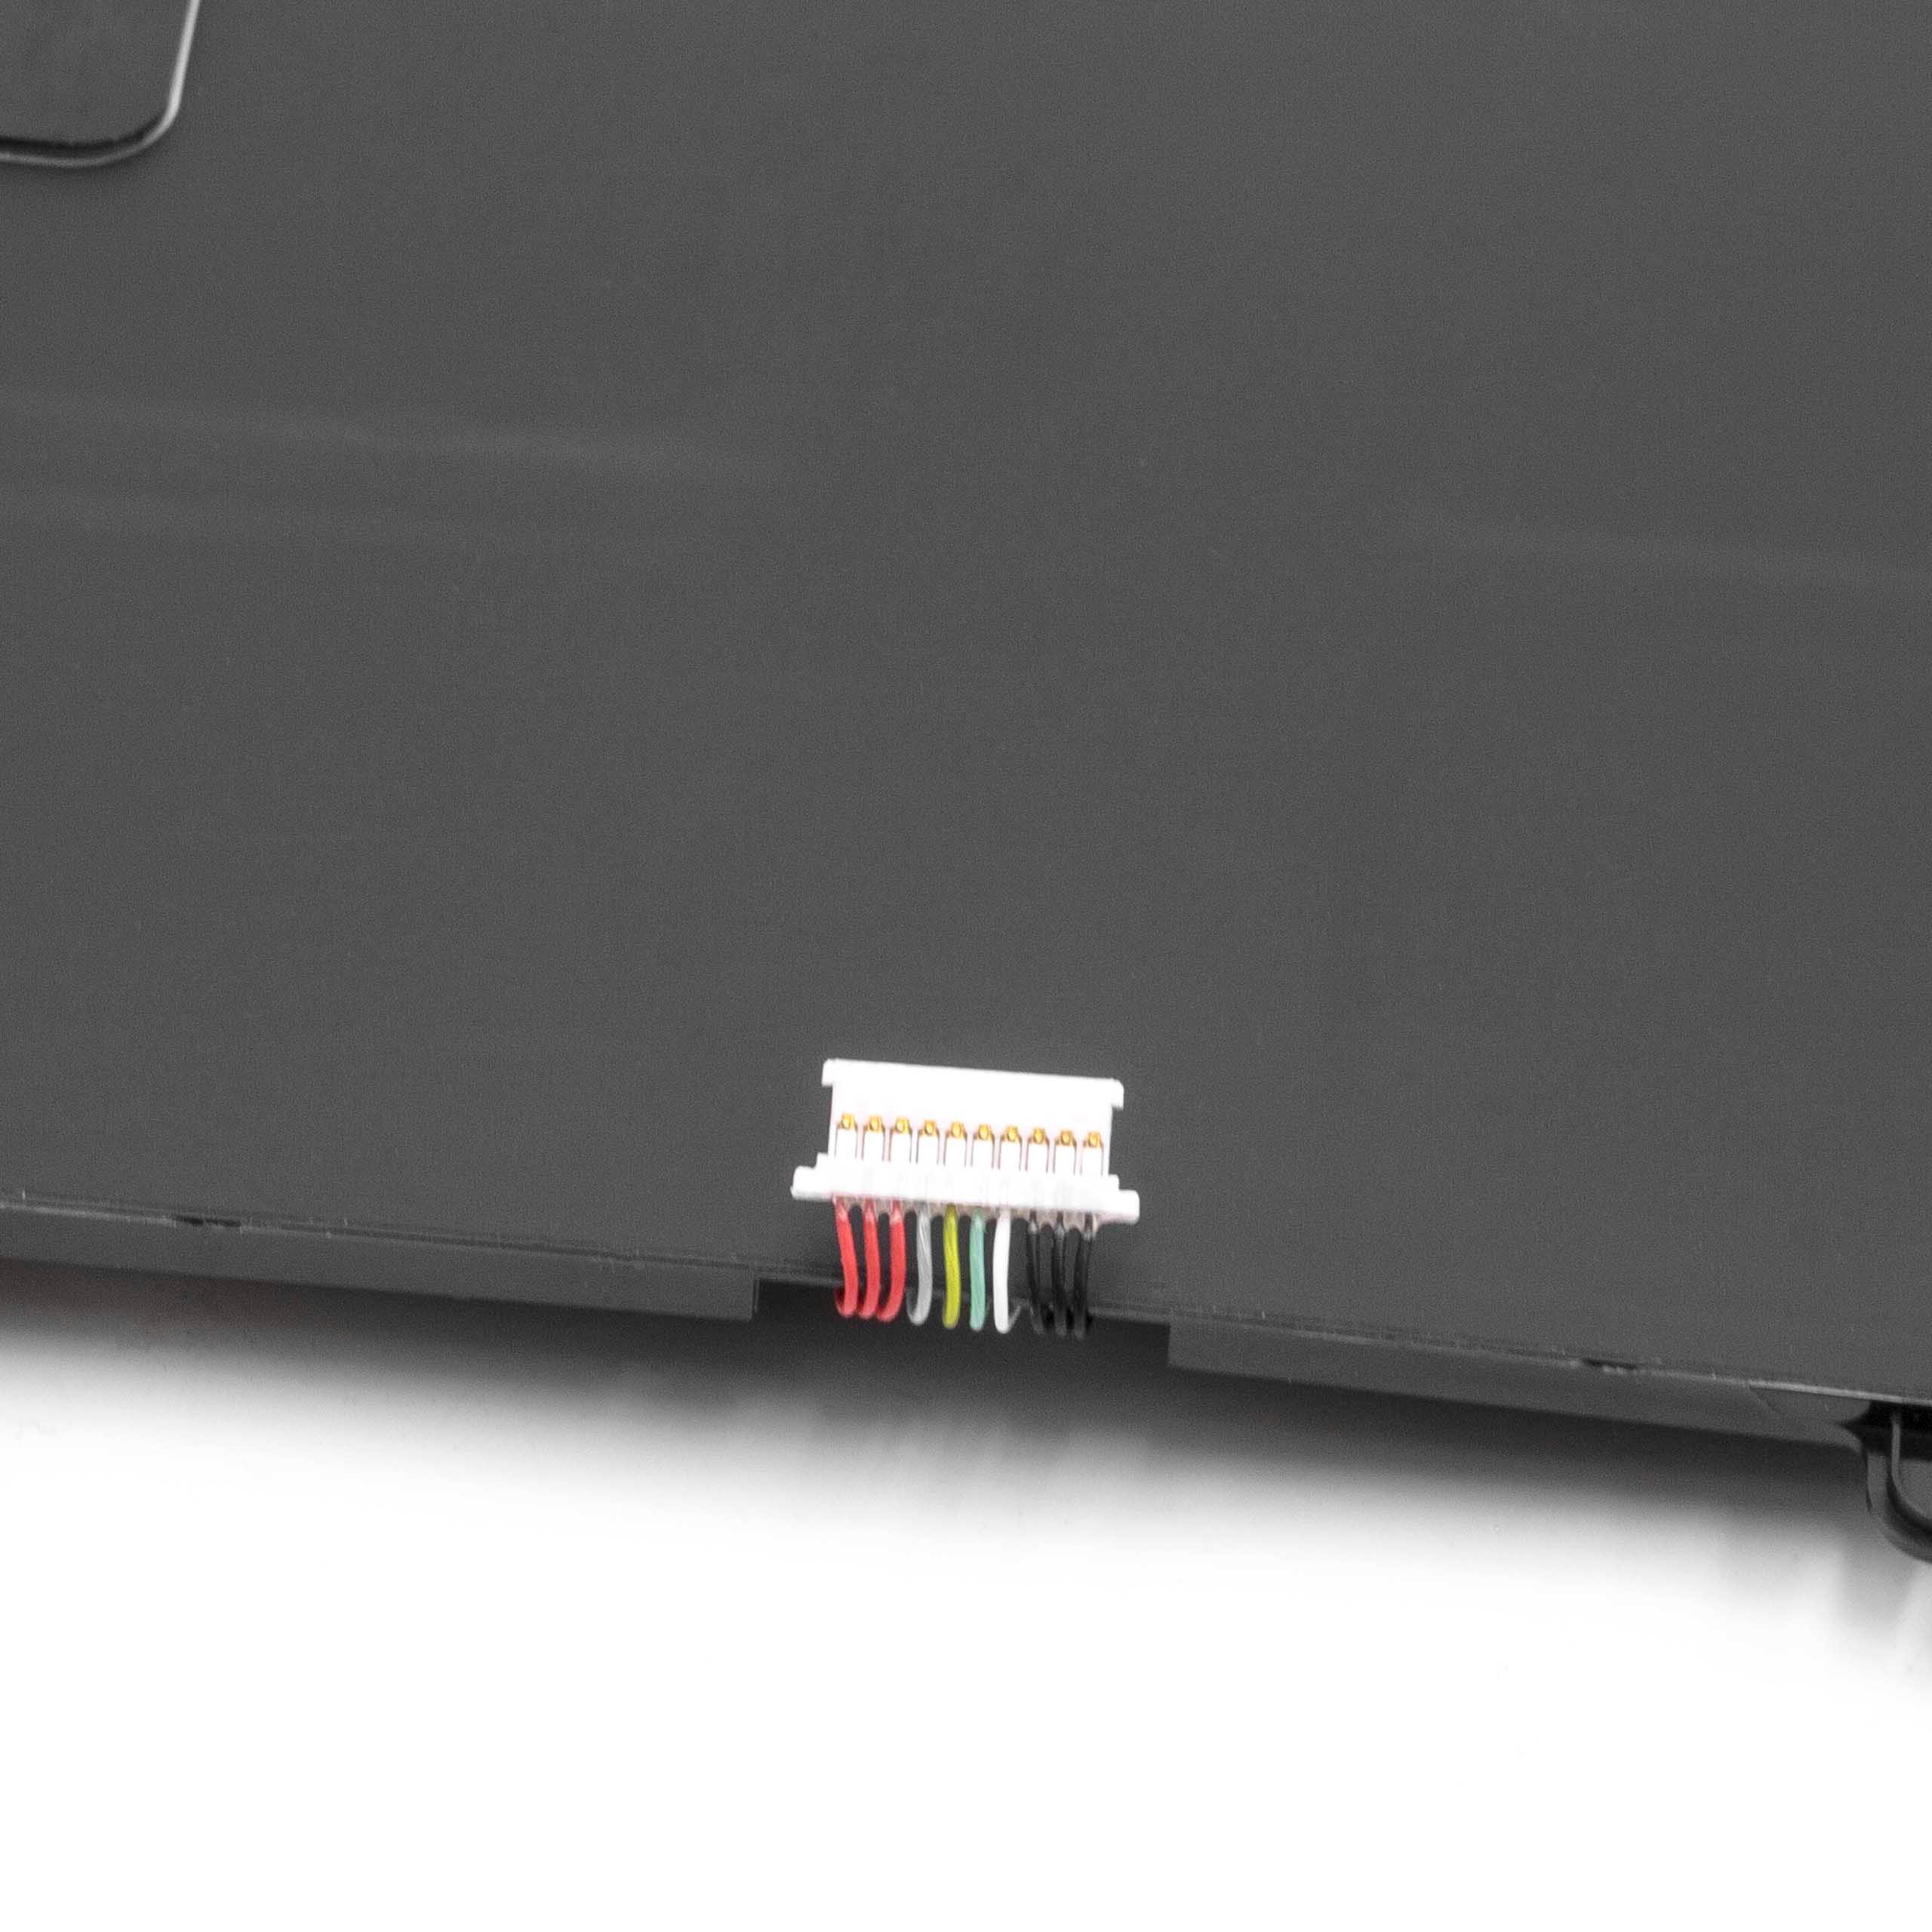 Akumulator do klawiatury bezprzewodowej zamiennik Dell CP305193L1, 7WMM7 - 3200 mAh 7,4 V LiPo